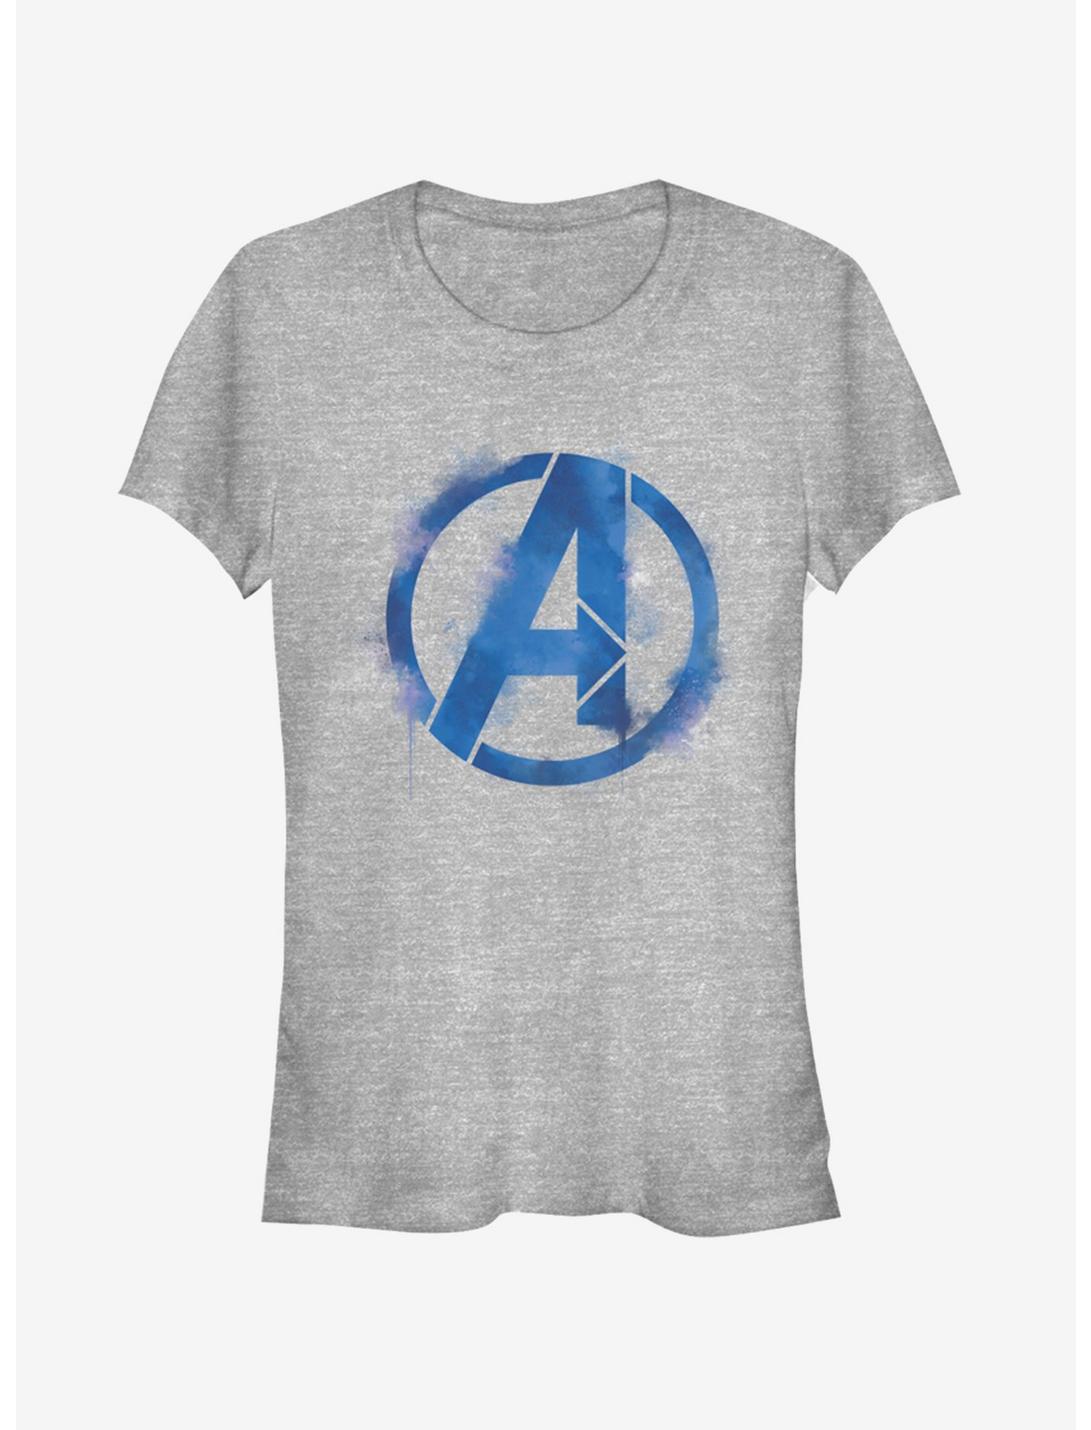 Marvel Avengers: Endgame Avengers Spray Logo Girls Heathered T-Shirt, ATH HTR, hi-res